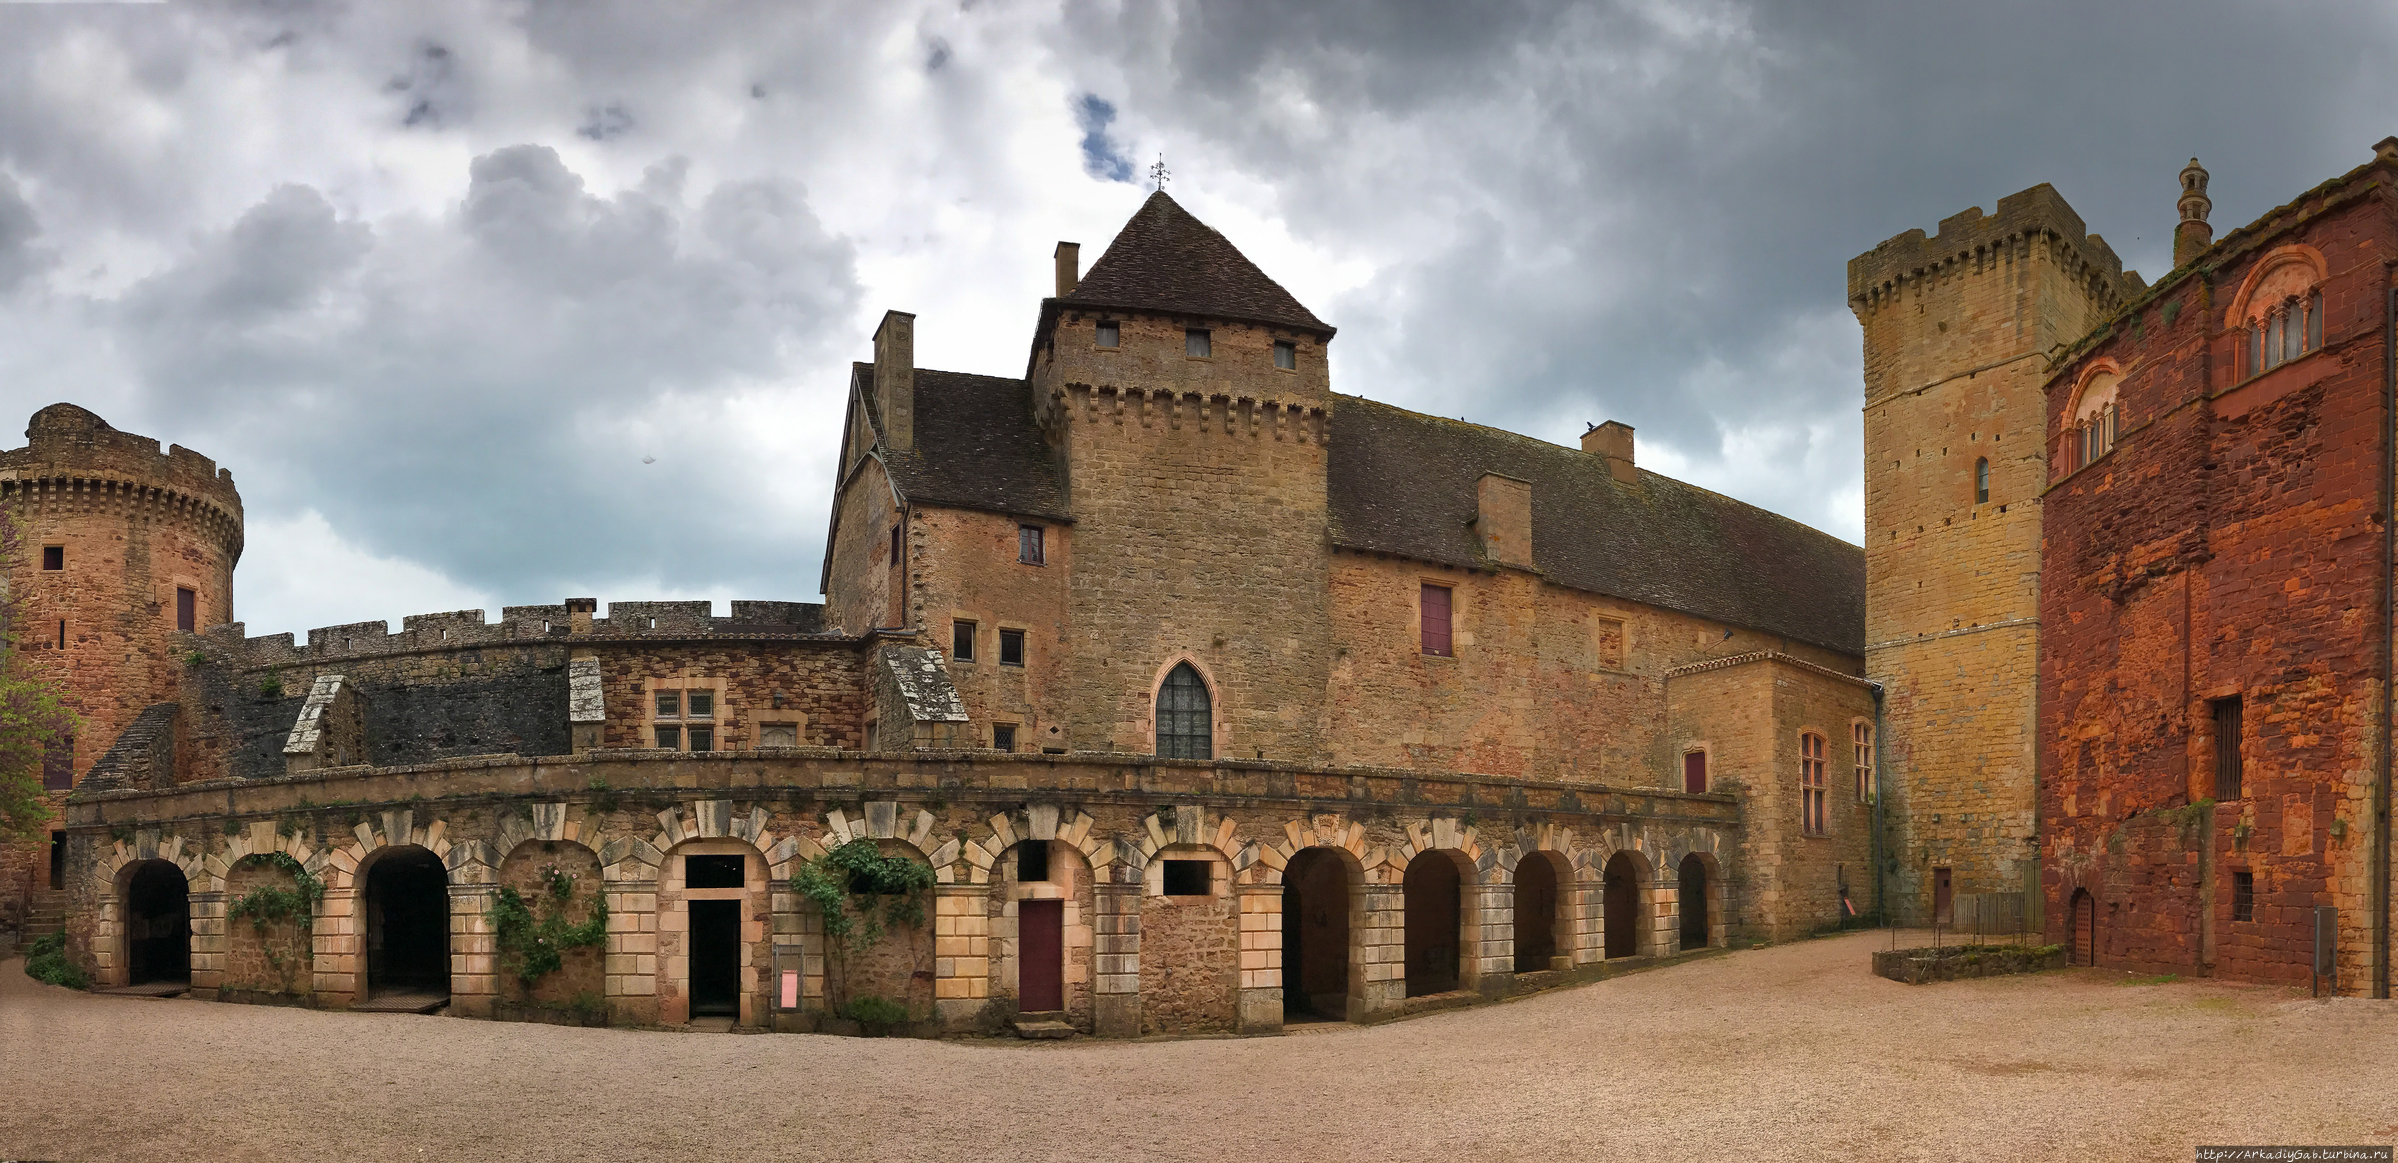 Во внутреннем дворе представлены все вехи строительства, и по ним можно легко проследить то, как развивался замок. Прюдома, Франция